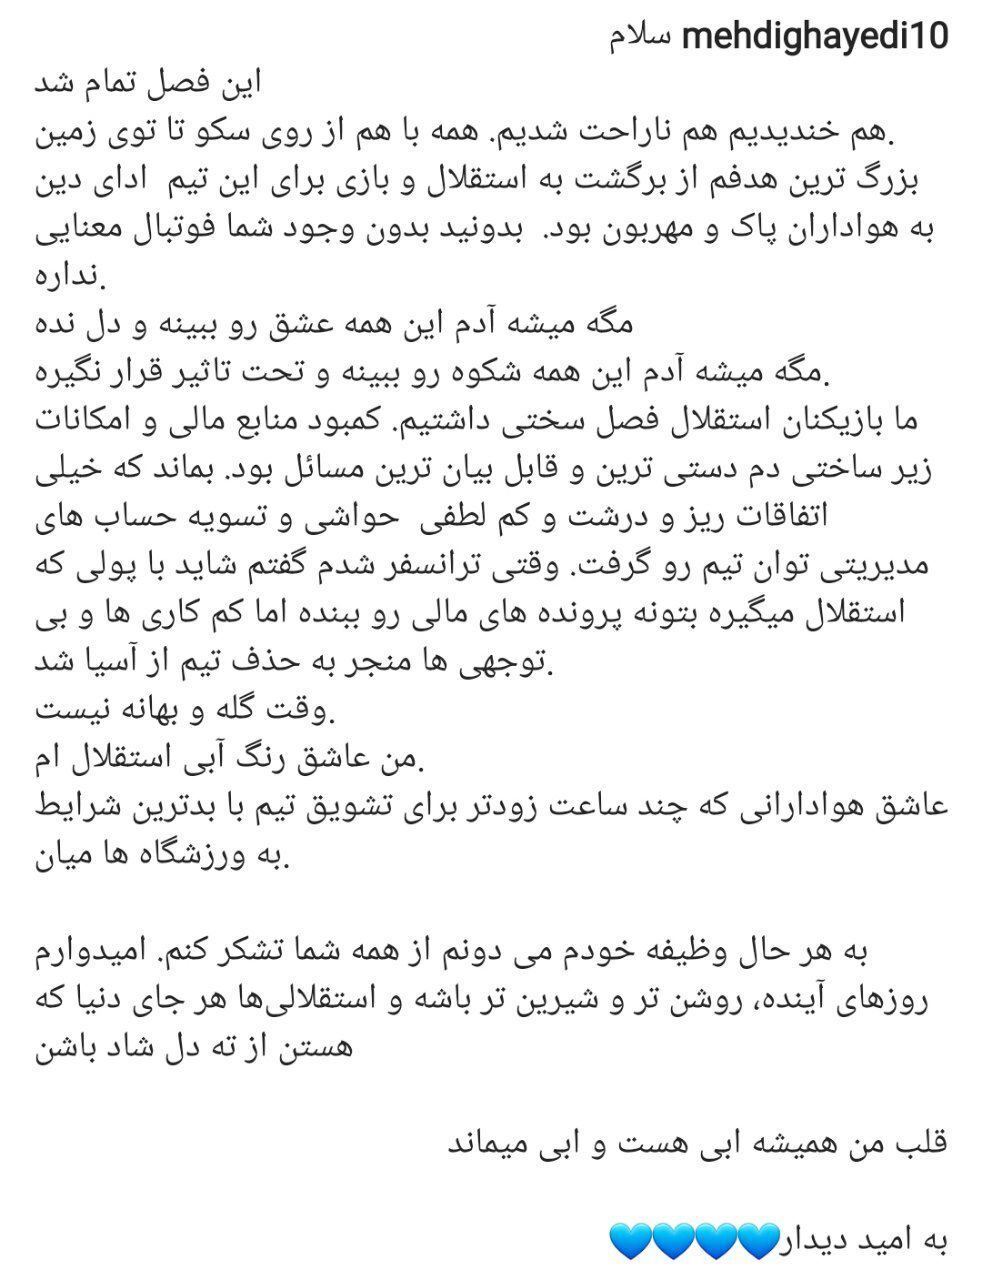 مهدی قایدی از استقلال جدا شد + تصویر